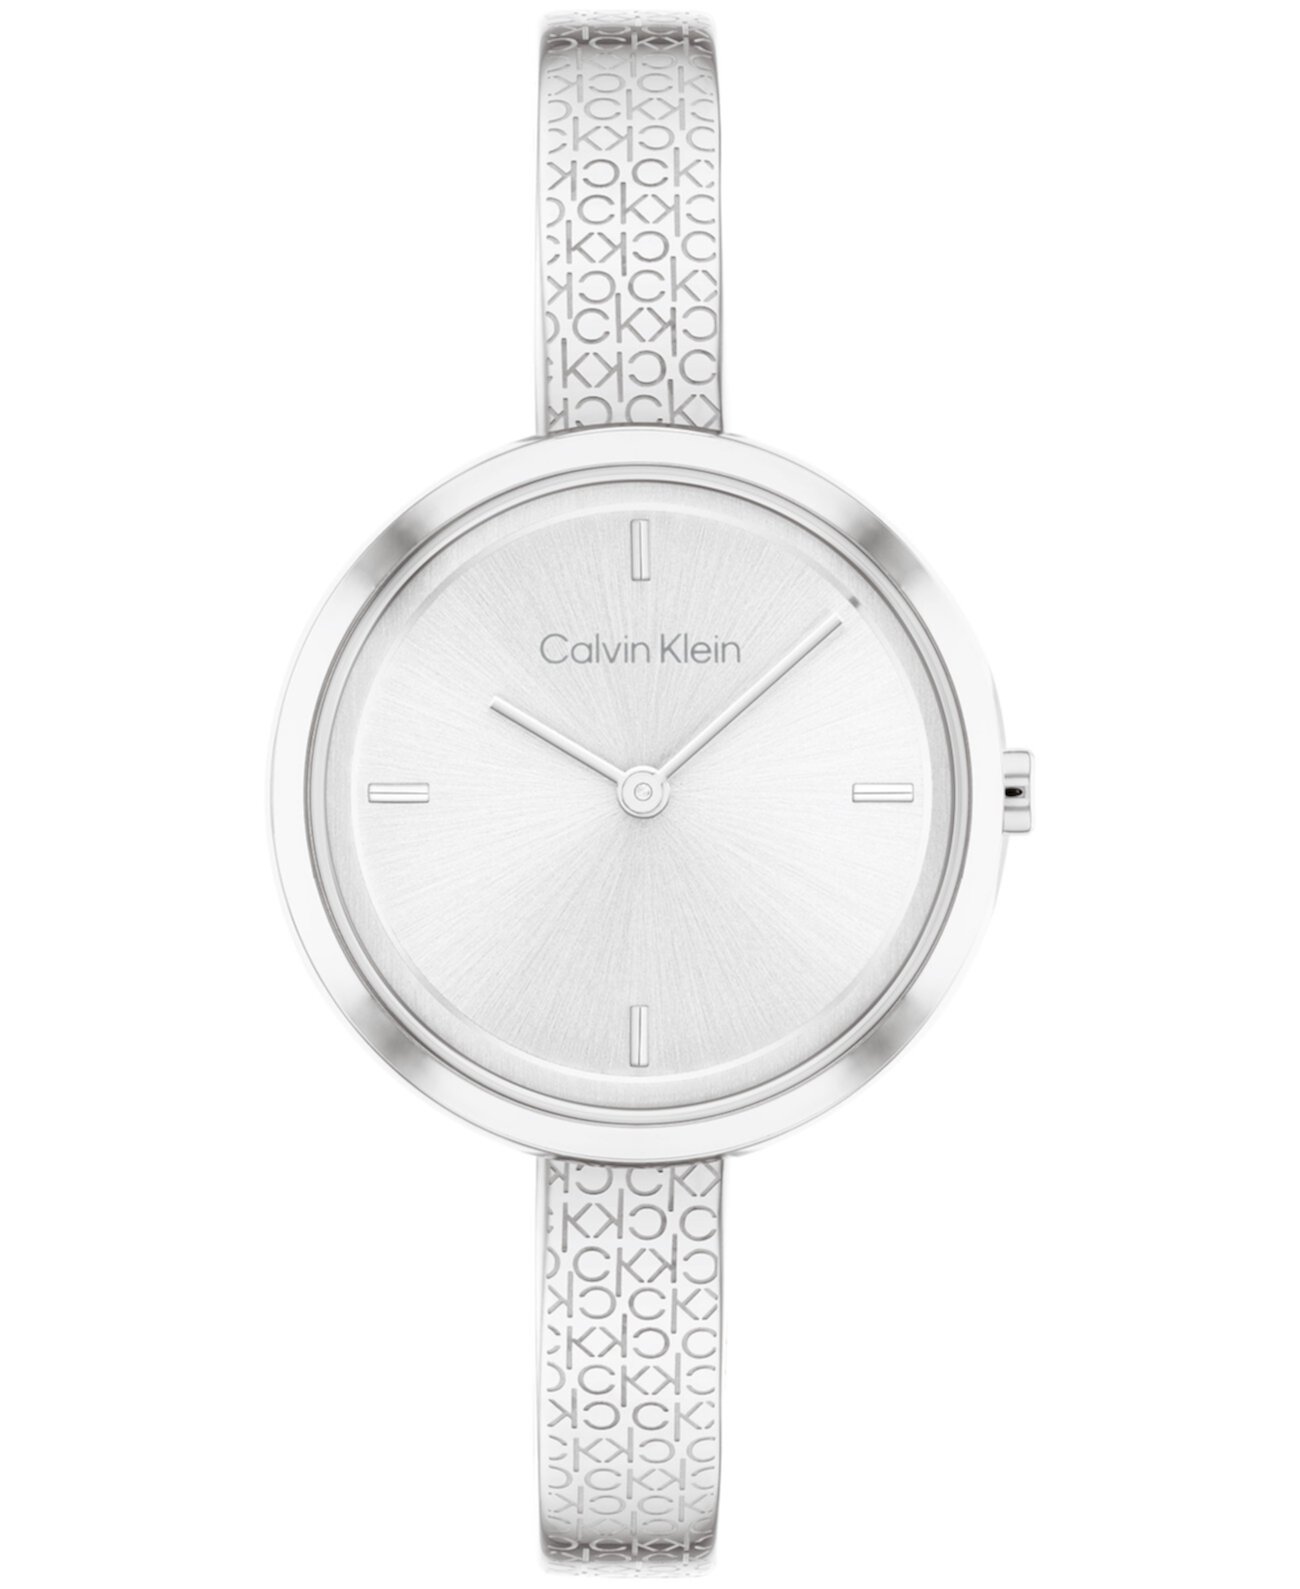 Женские серебристые часы-браслет из нержавеющей стали 30 мм Calvin Klein